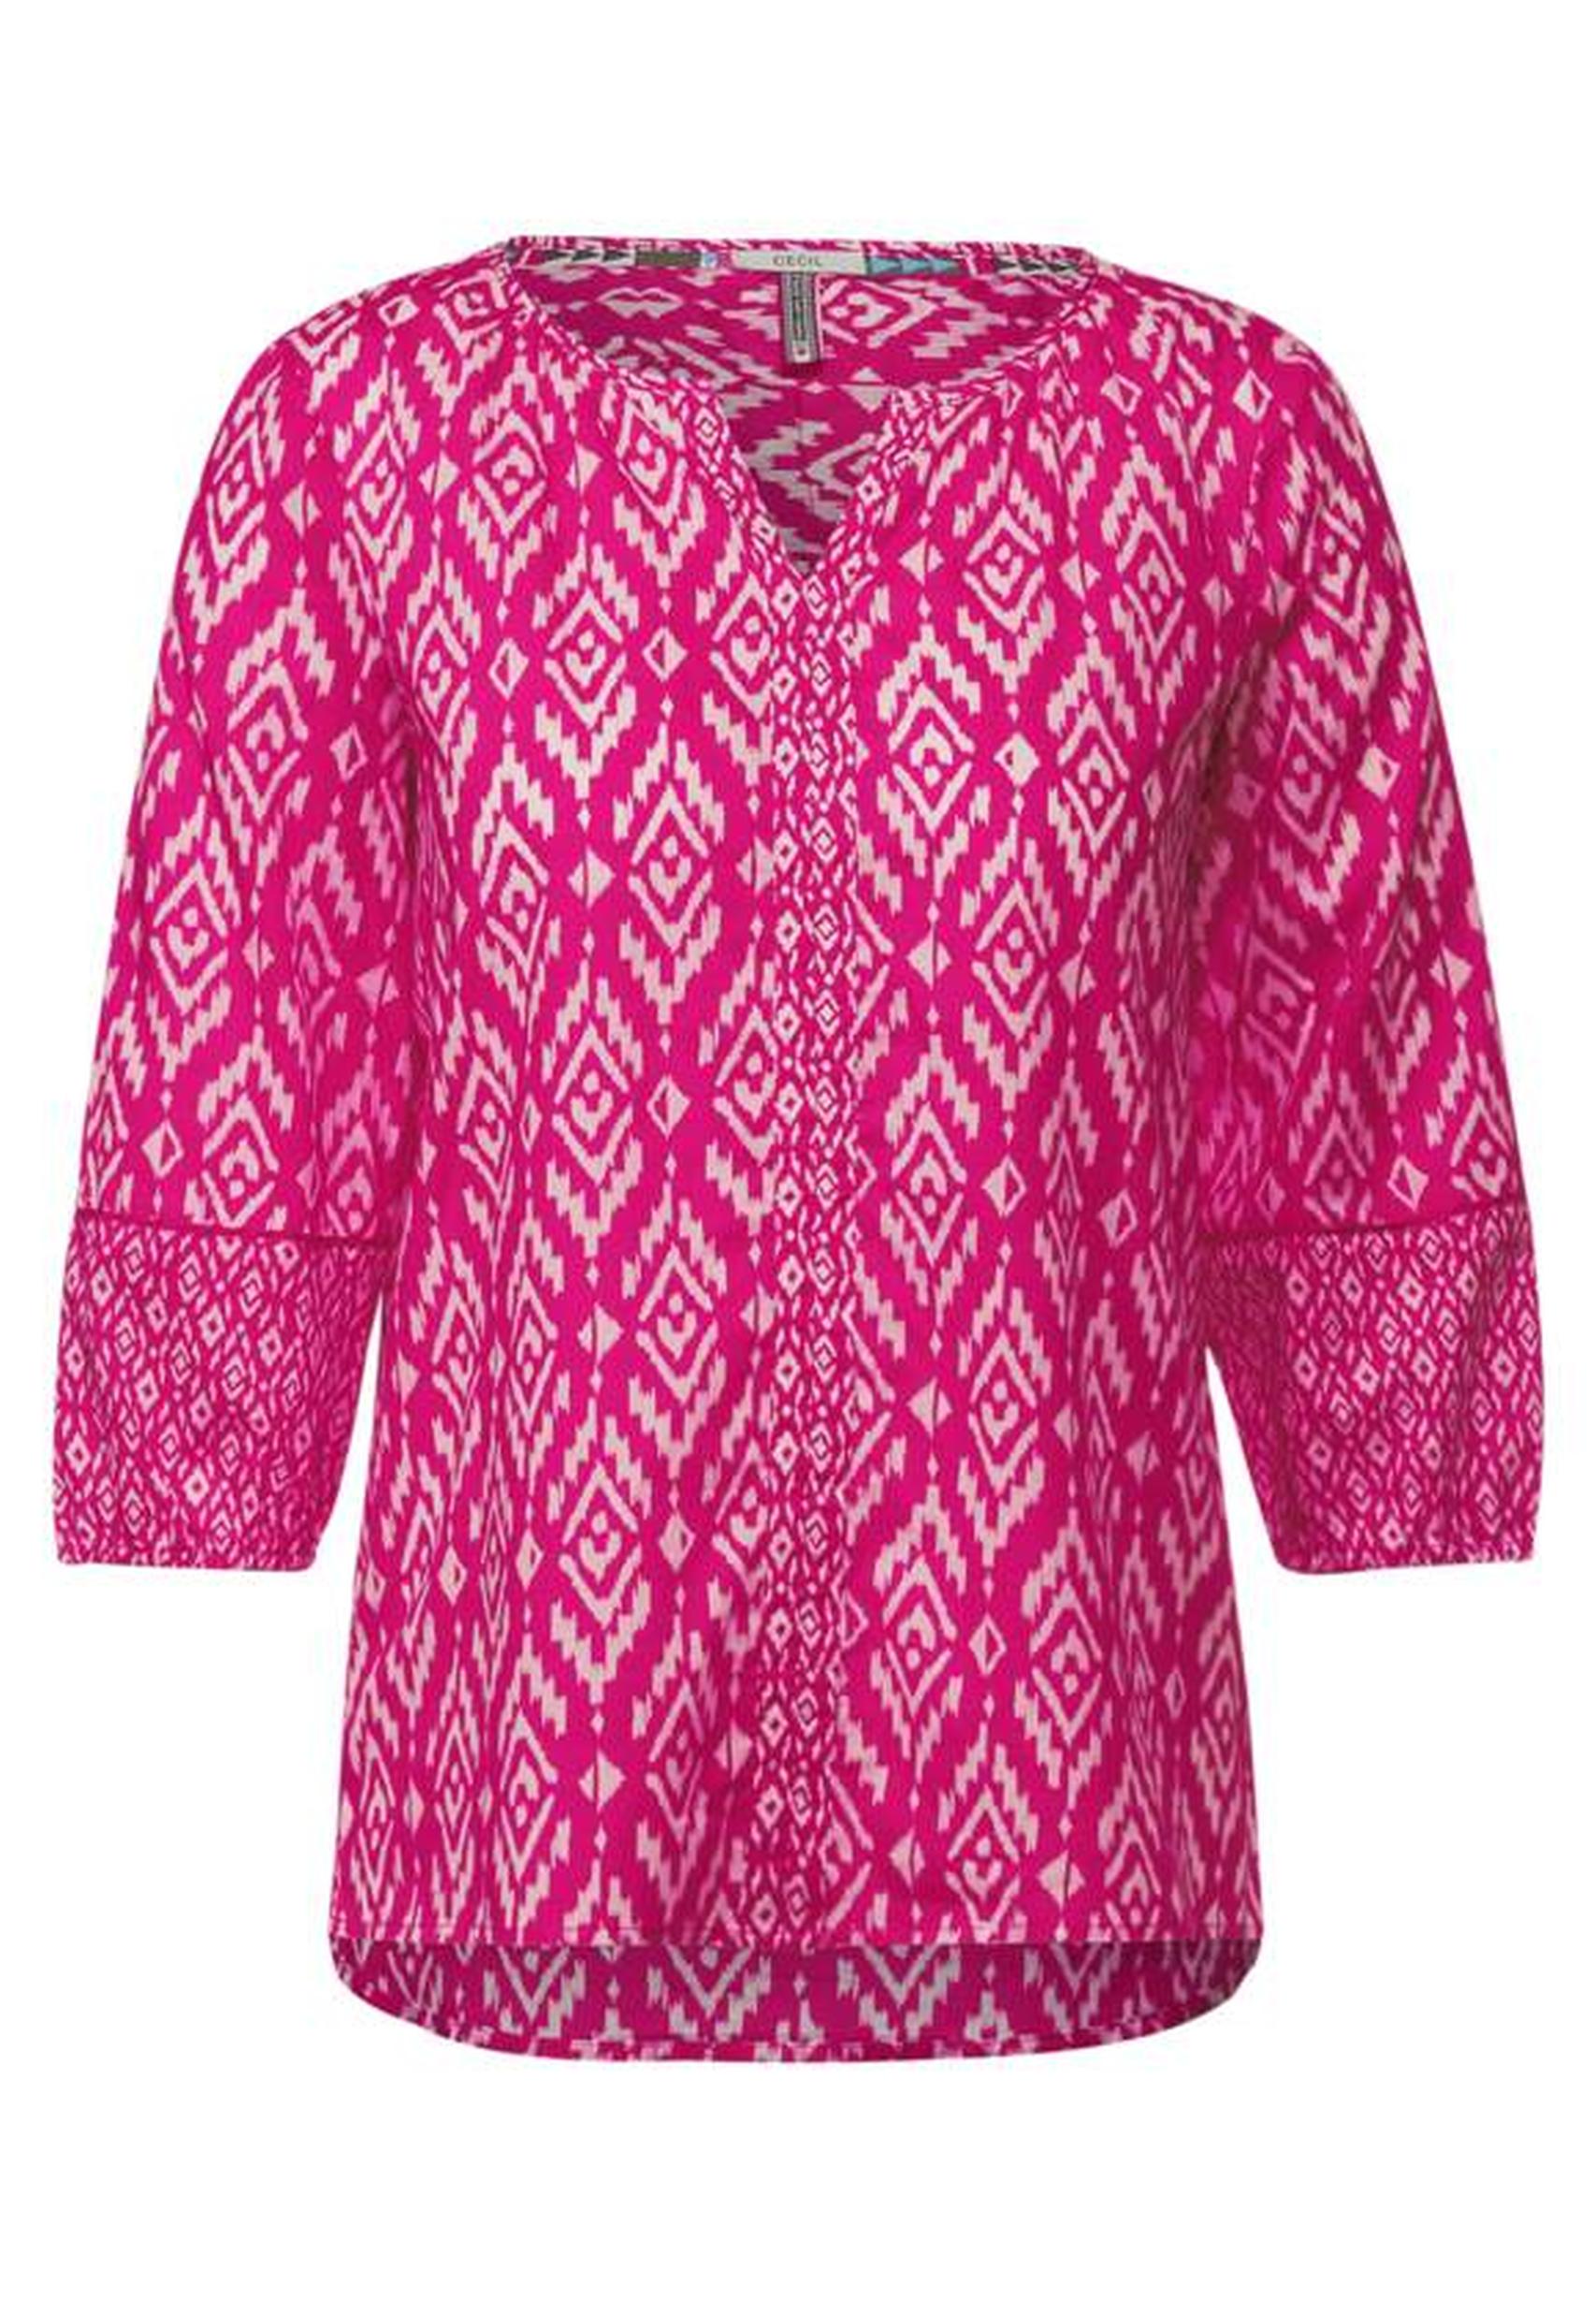 Modische Bluse aus der Kollektion von CECIL in Raspberry Pink 343270